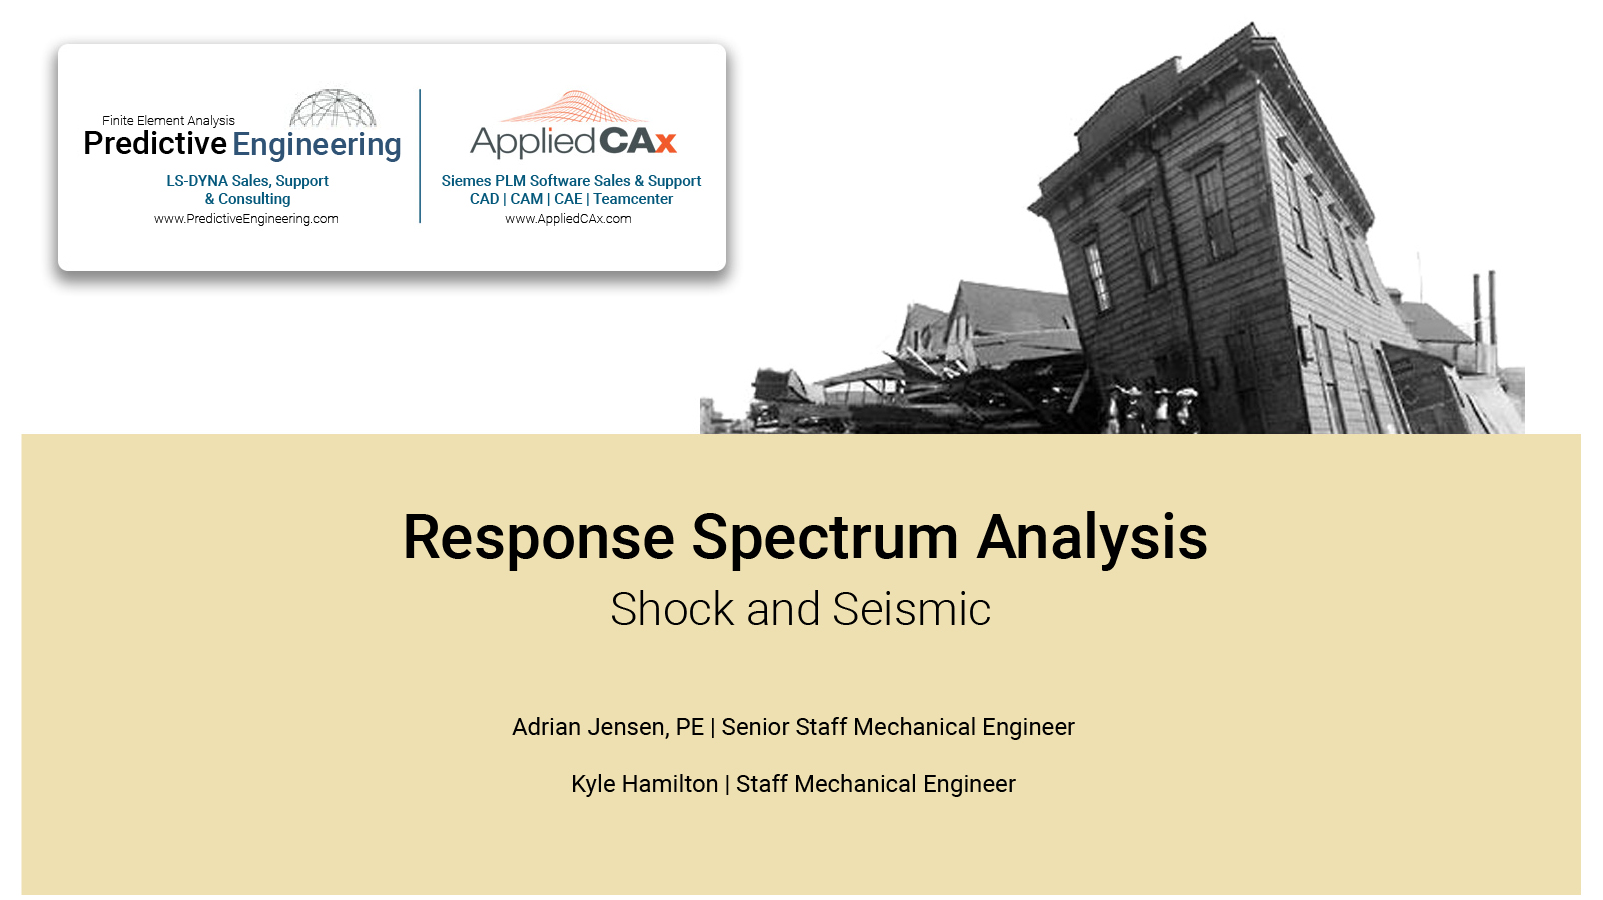 Response Spectrum Analysis - Shock and Seismic in FEMAP & NX Nastran